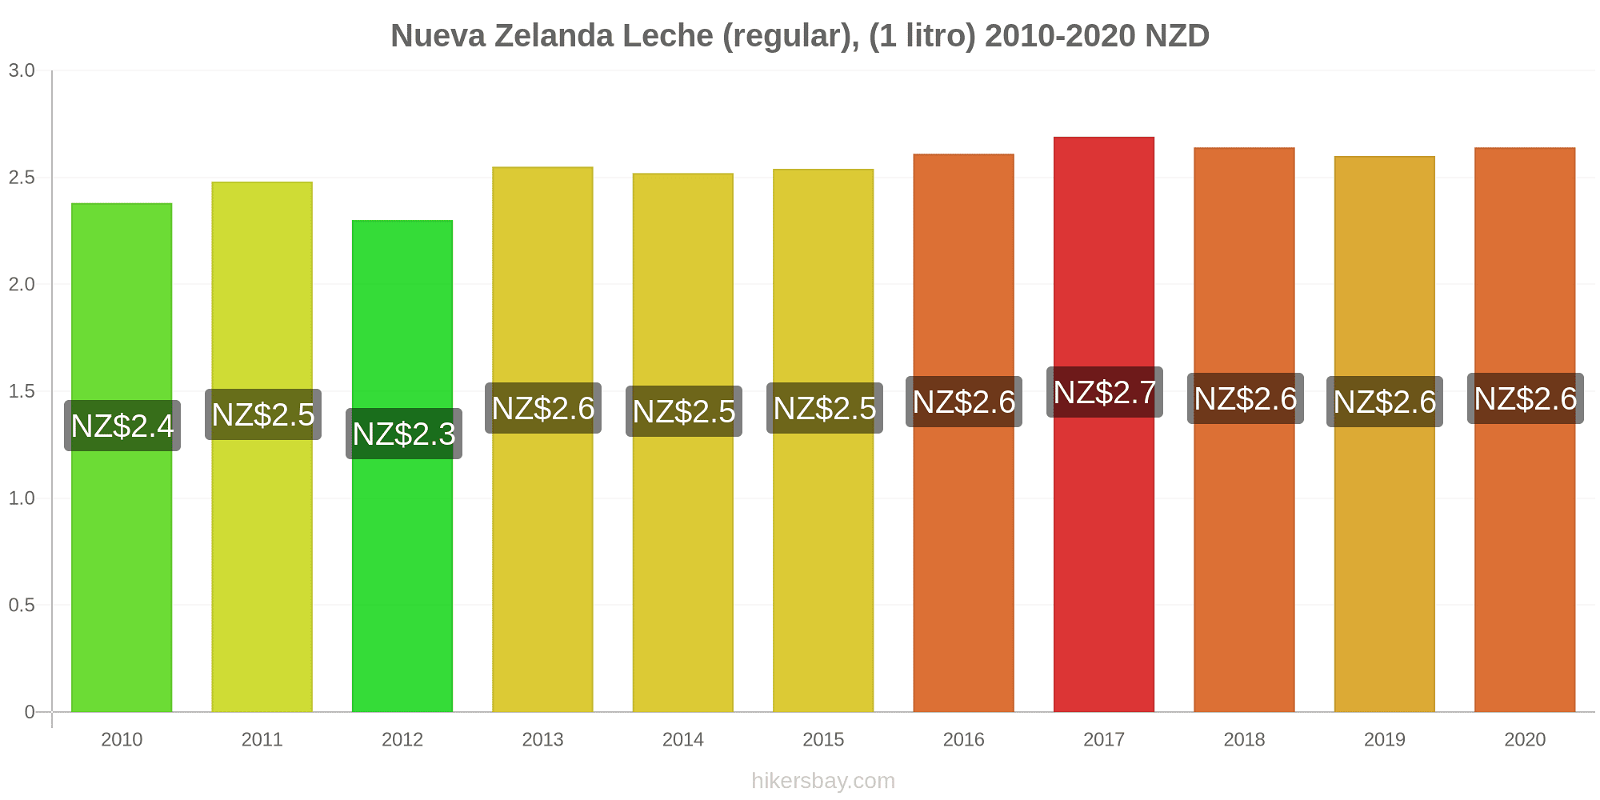 Nueva Zelanda cambios de precios Leche (Regular), (1 litro) hikersbay.com